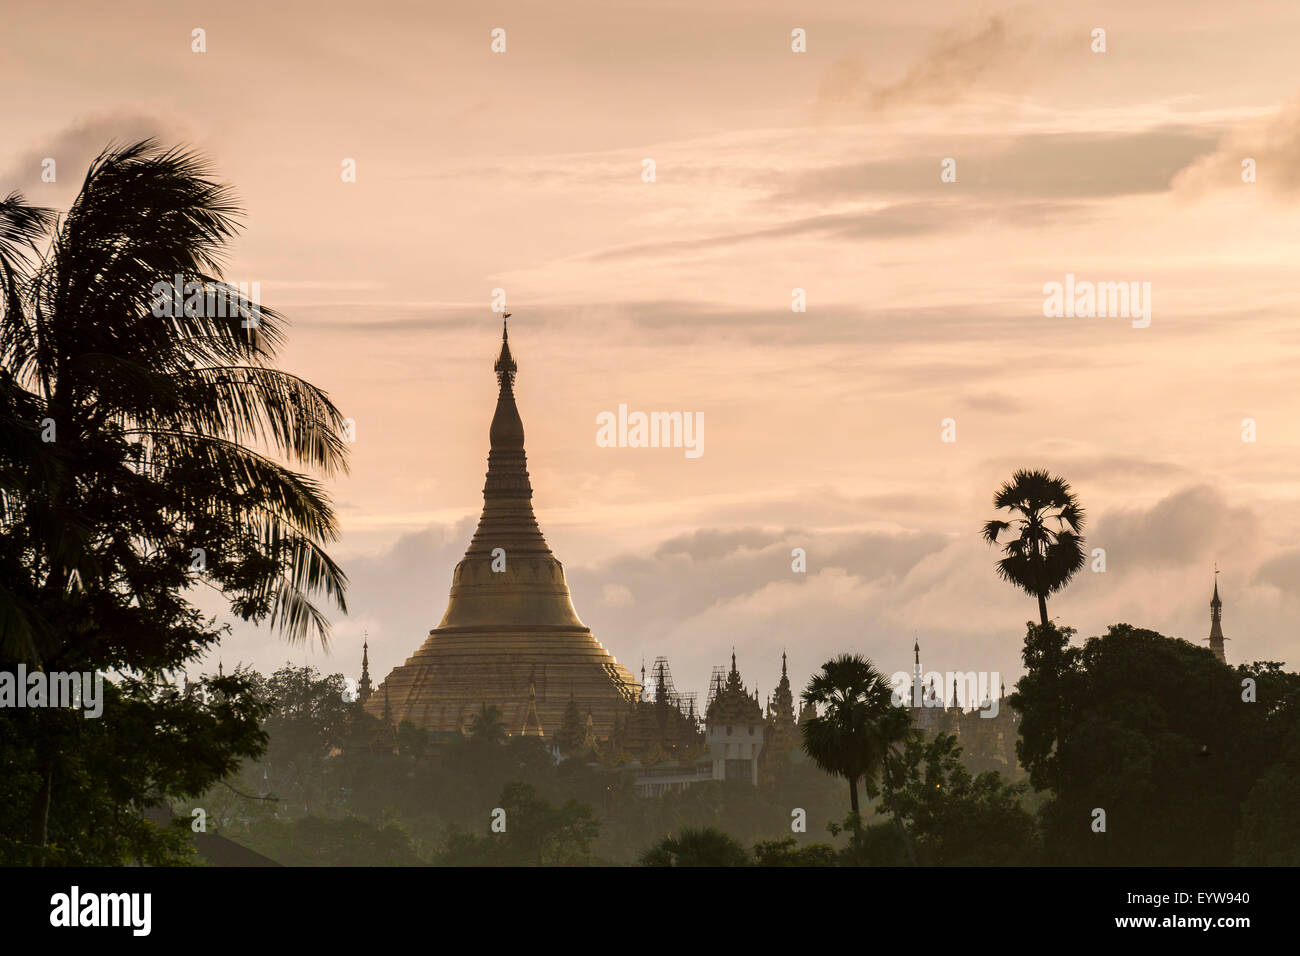 Golden stupa at sunset, chedi, Shwedagon Pagoda, Kandawgyi Lake, Kandawgyi Nature Park, Yangon or Rangoon, Yangon Region Stock Photo